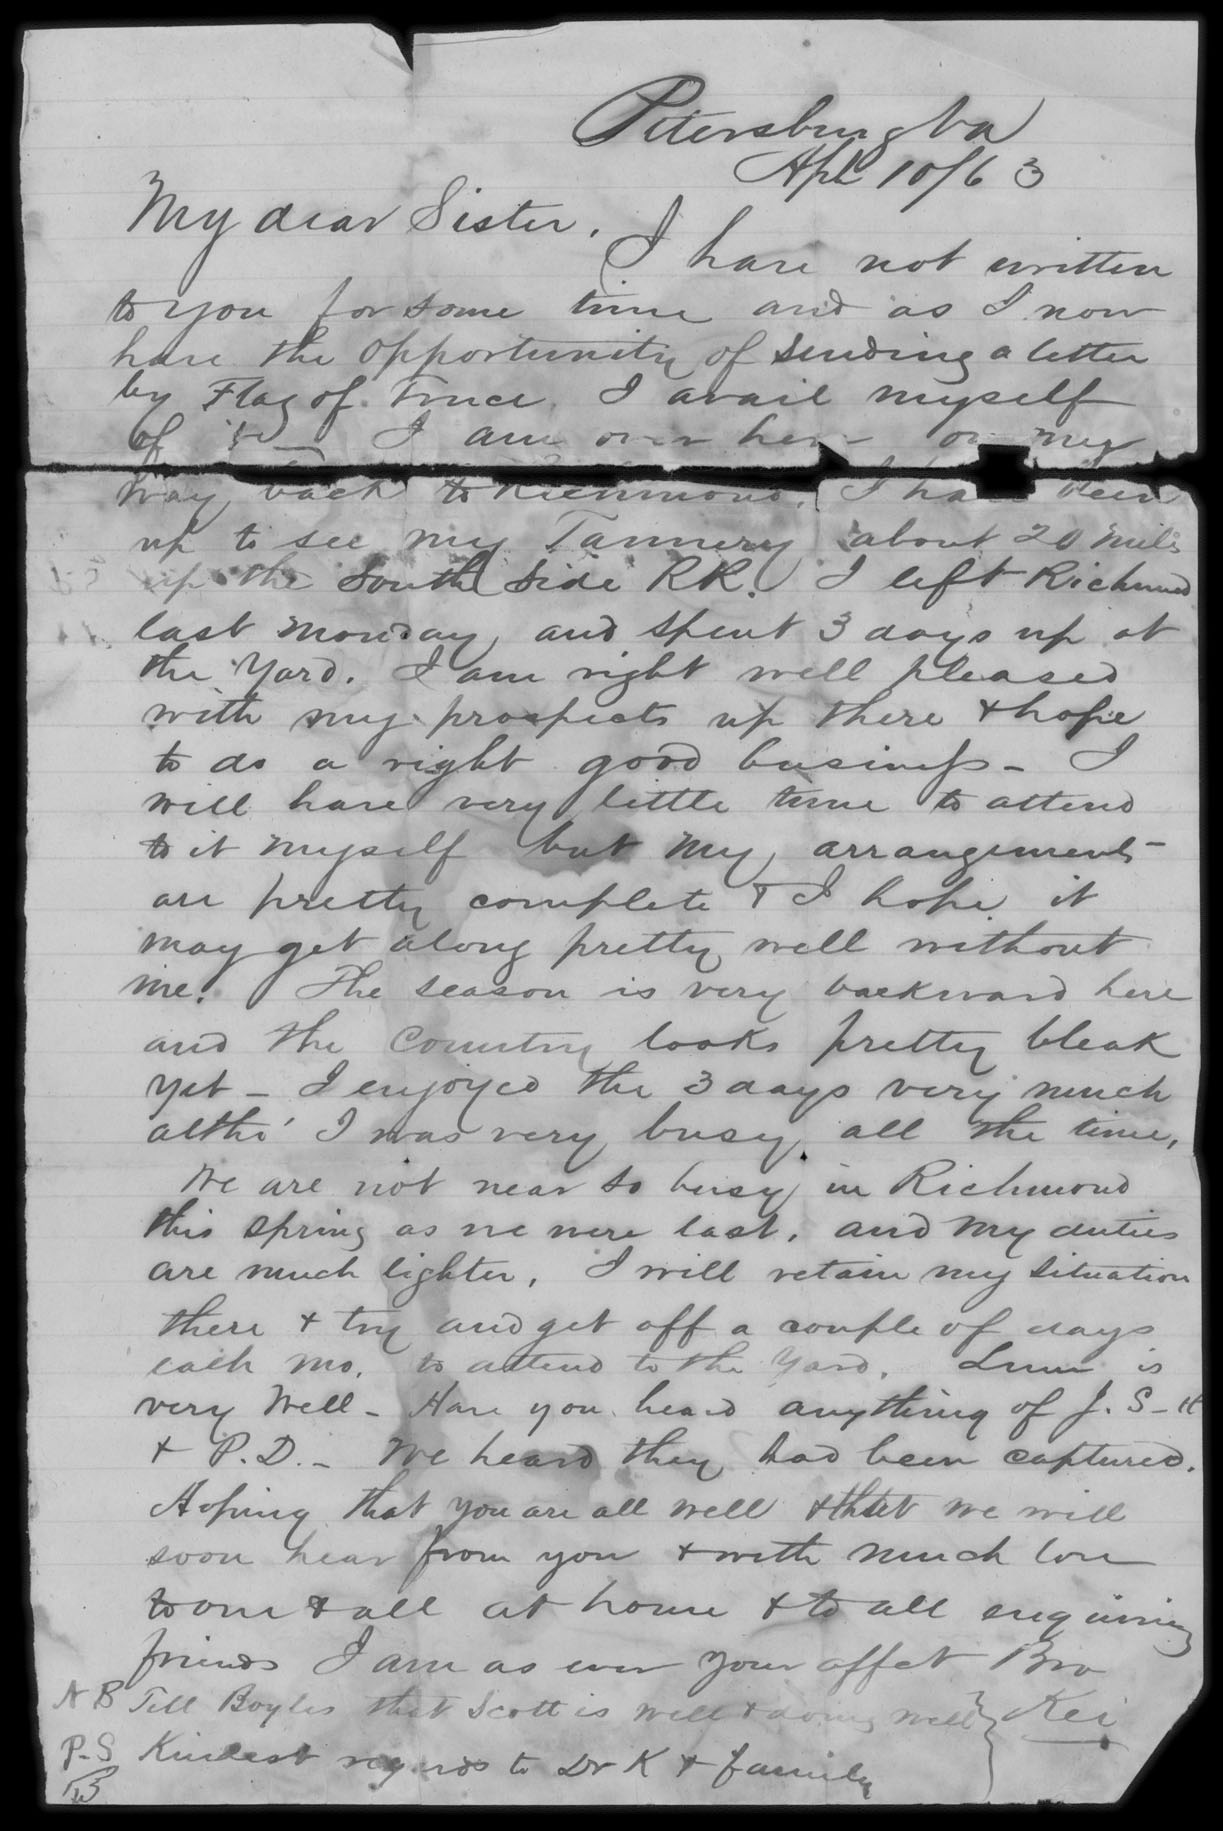 Letter, Andrew Keiser Shriver, Petersburg, Virginia, to sister